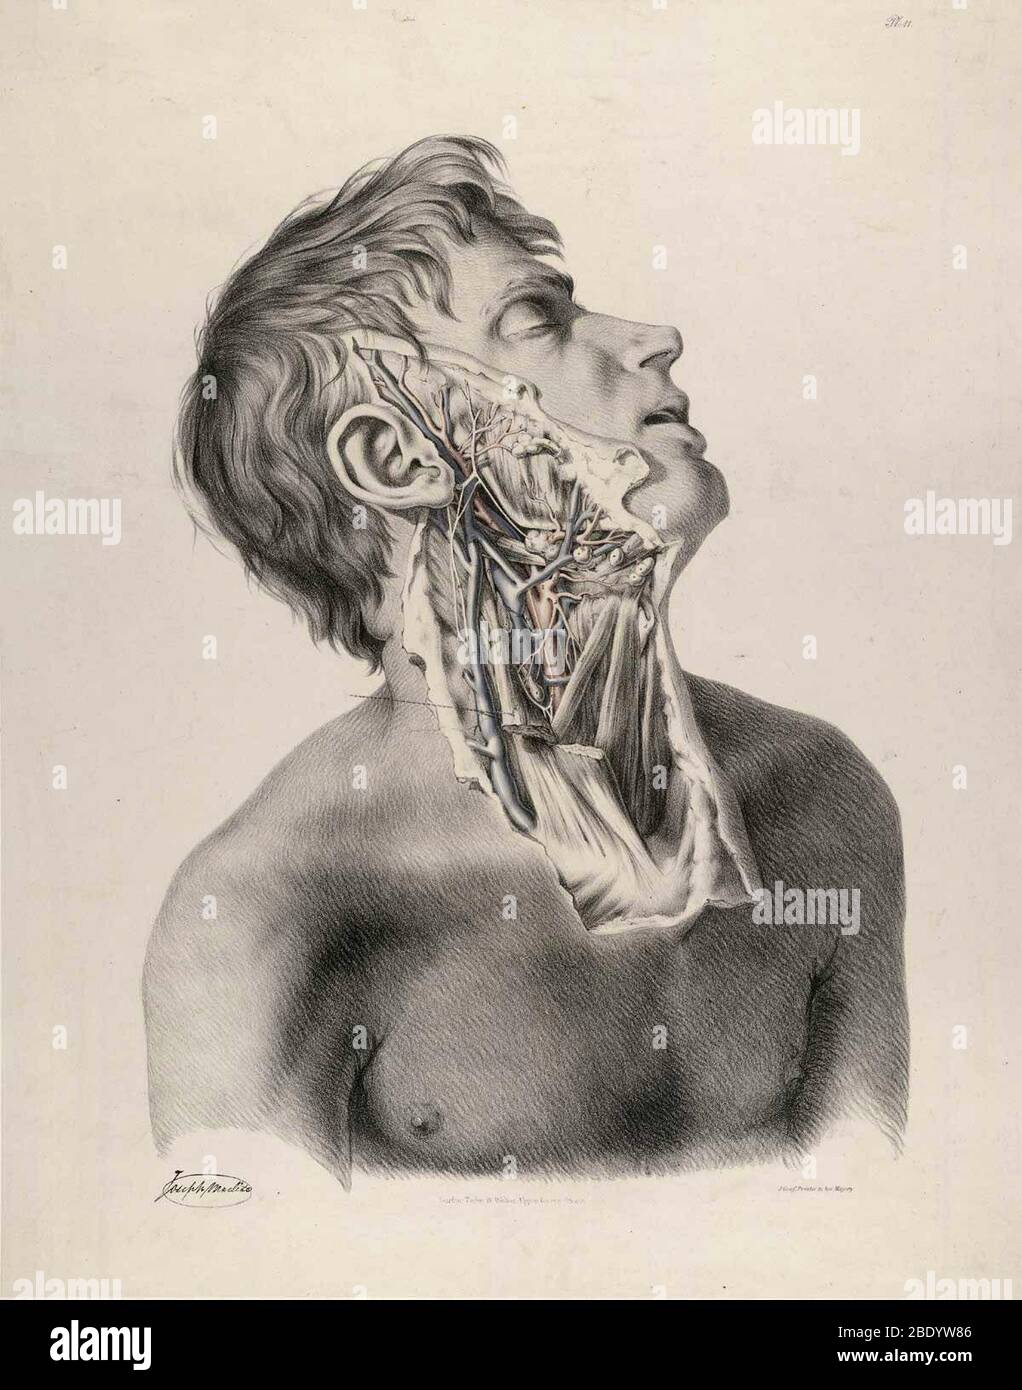 Illustration anatomique historique Banque D'Images